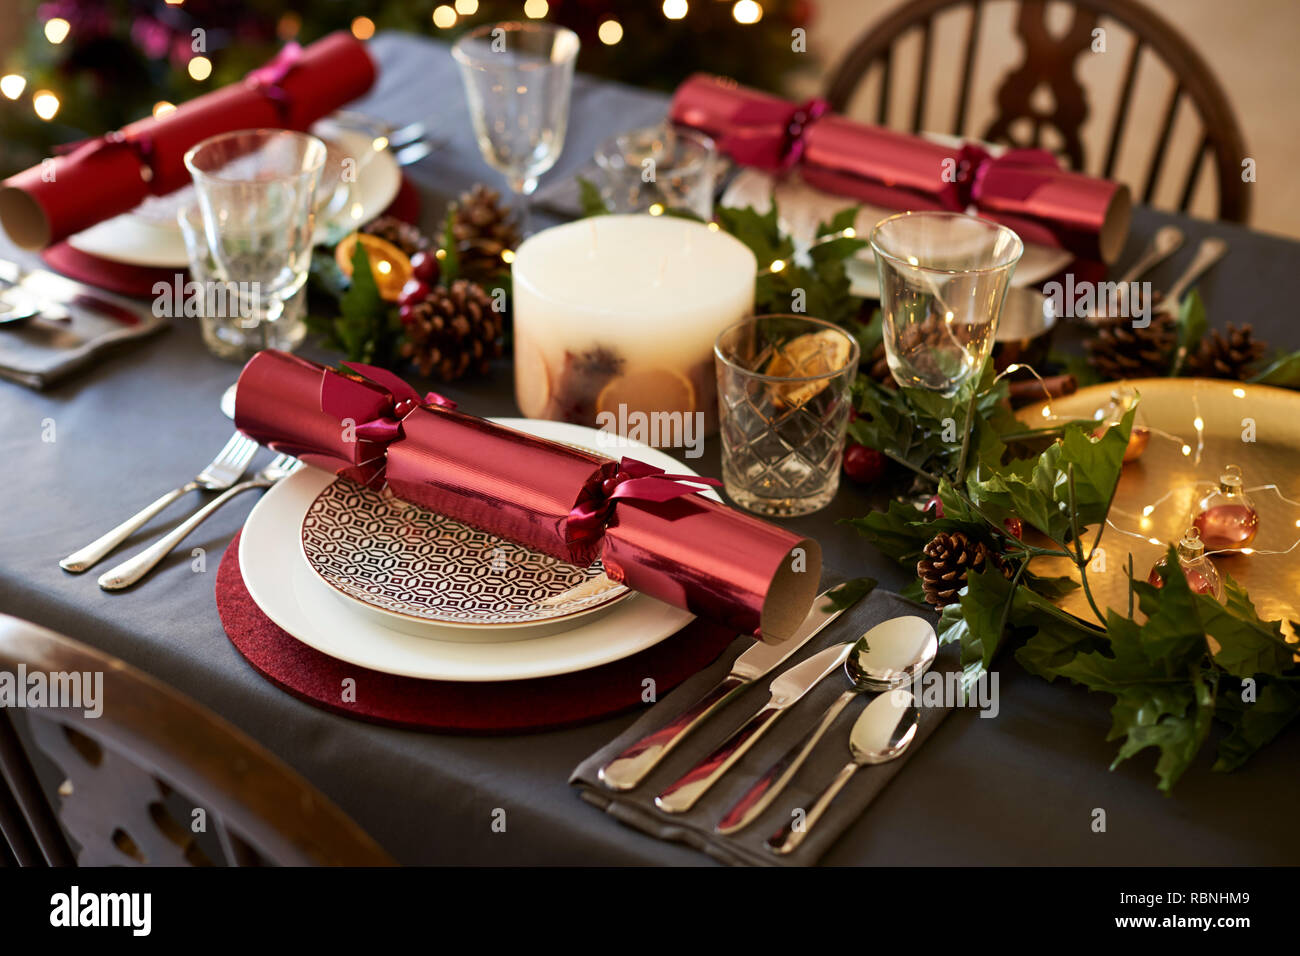 In der Nähe von Weihnachten Tischdekoration mit Knallbonbons arrangiert auf Platten und roten und grünen Tisch Dekorationen, Erhöhte Ansicht Stockfoto